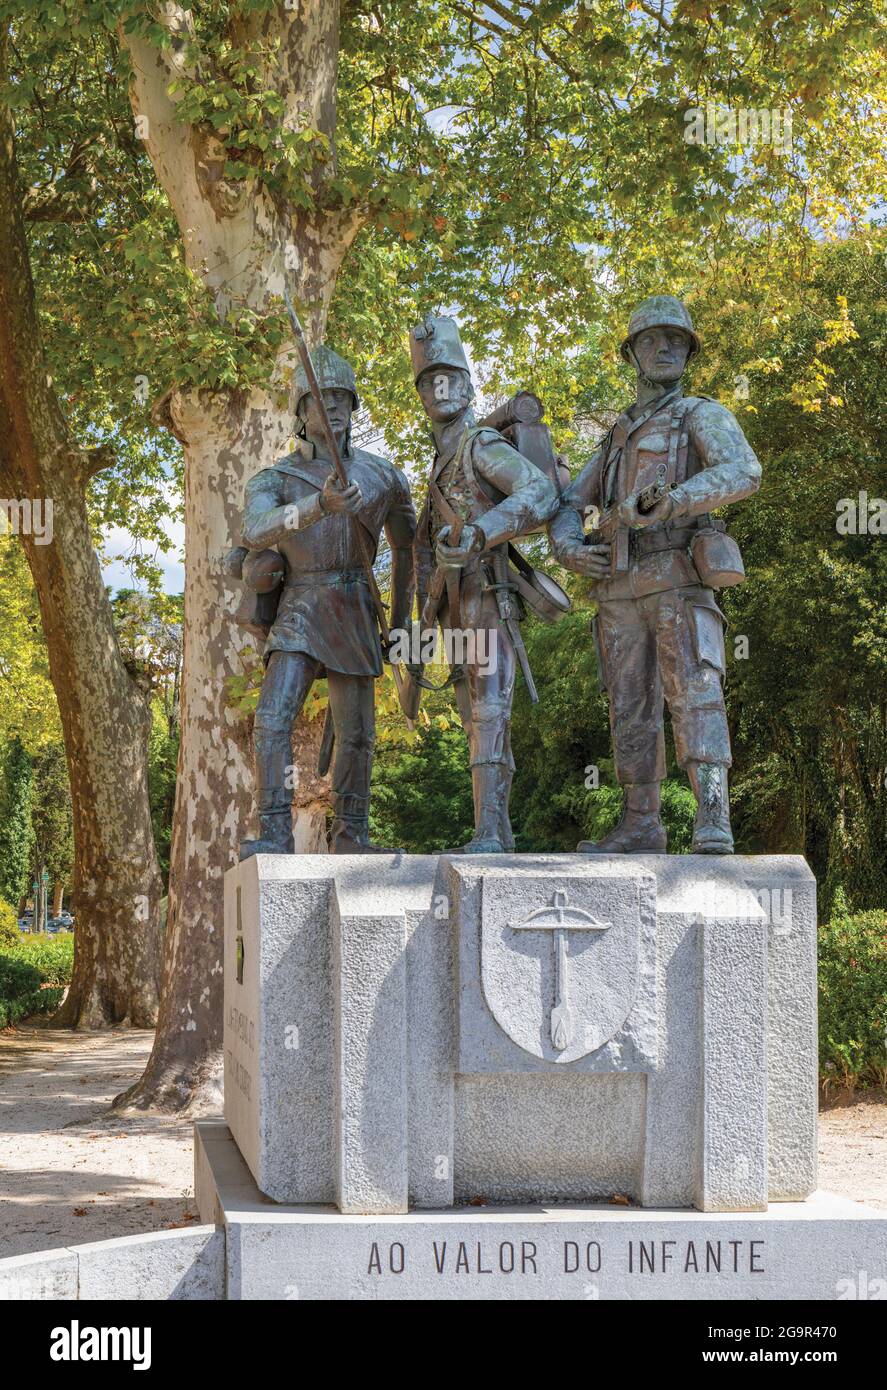 Monumento ai soldati portoghesi morti nelle guerre coloniali d'oltremare del Portogallo. Mafra, distretto di Lisbona, Portogallo. Foto Stock